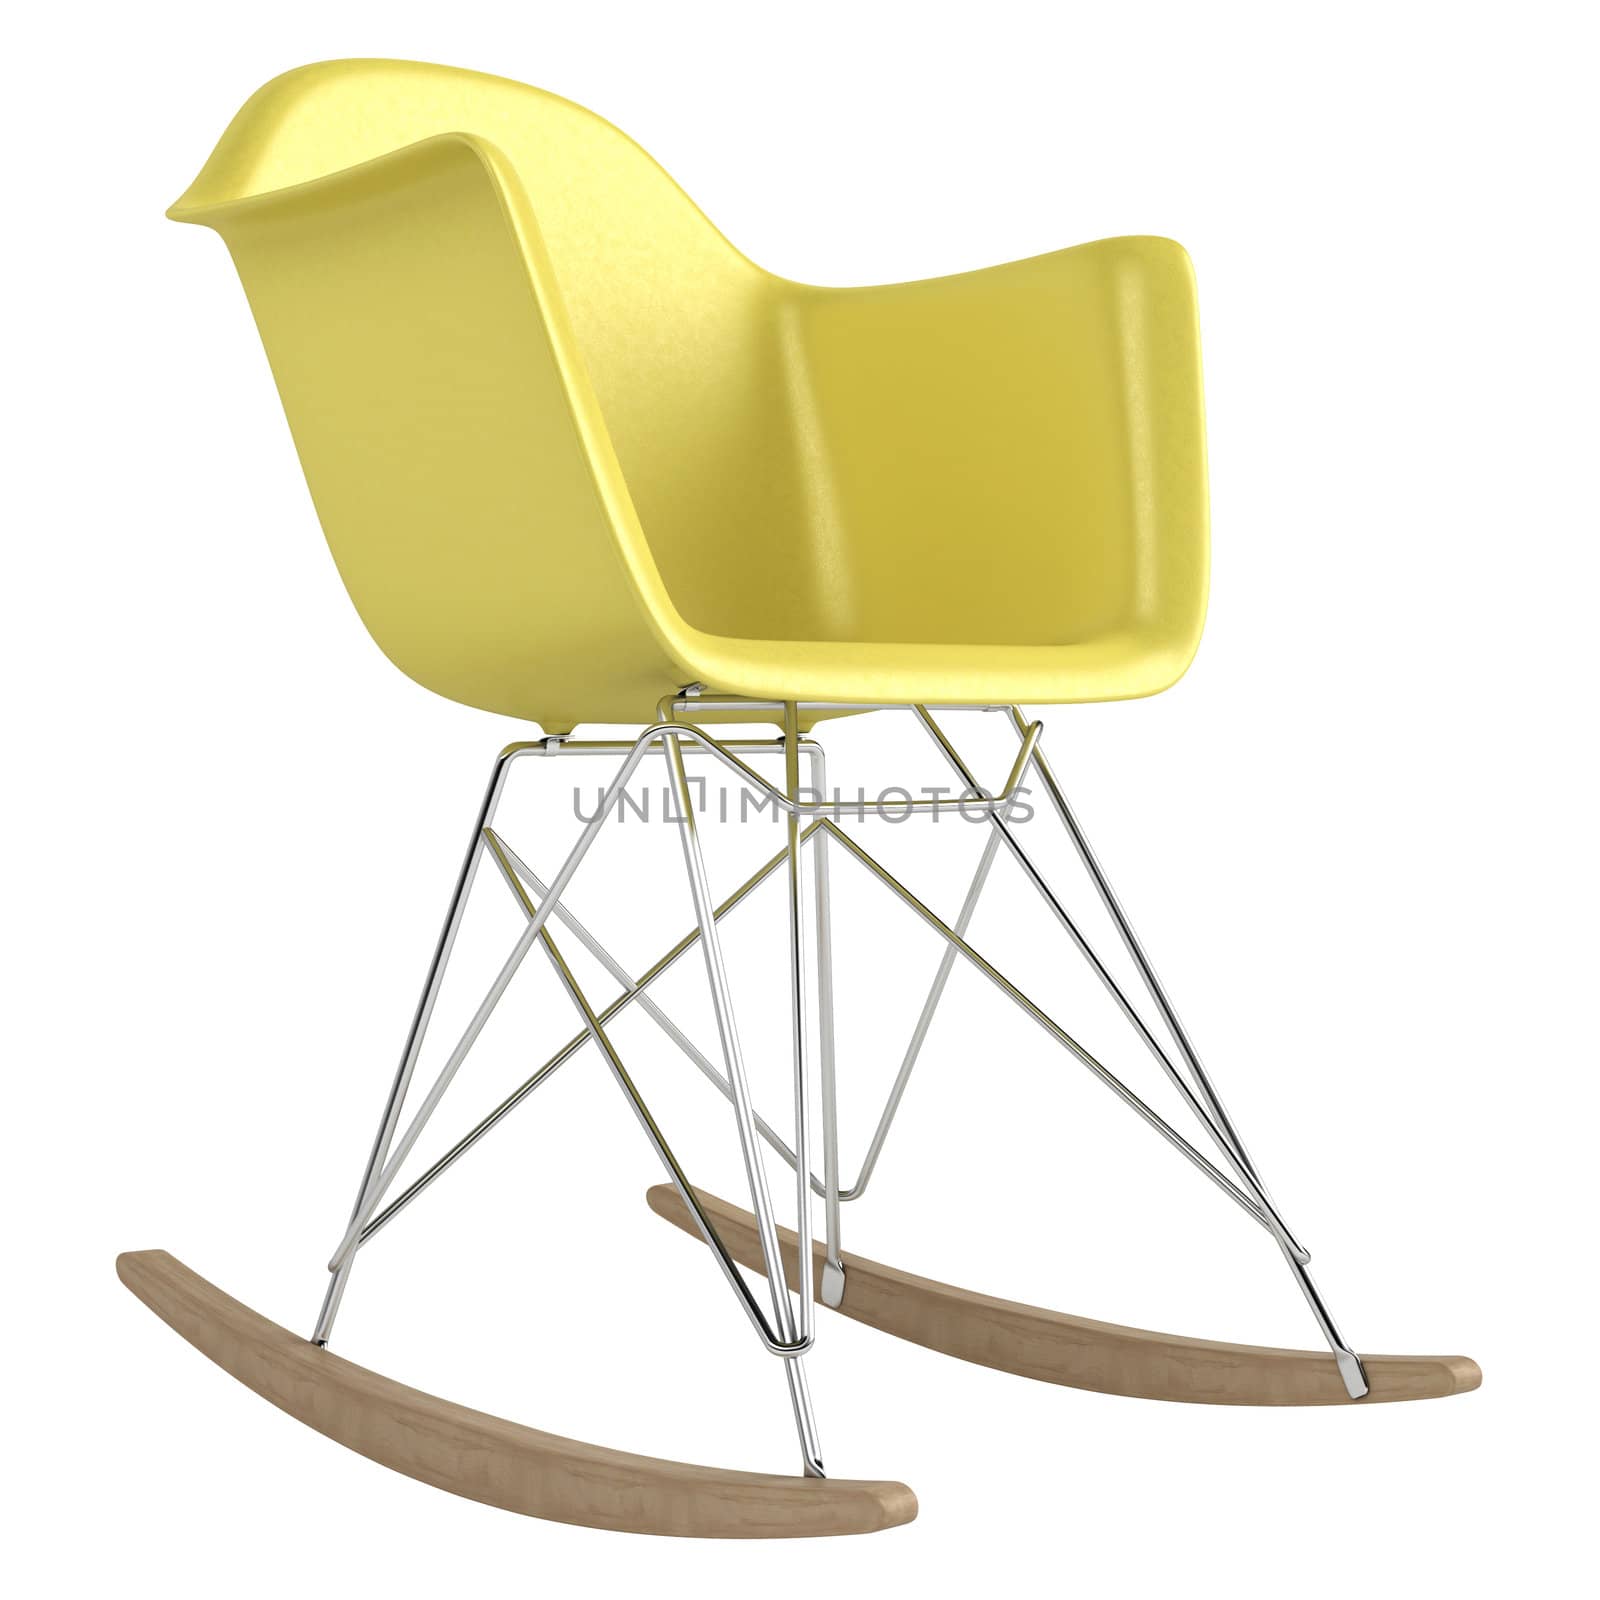 Innovative rocking chair by AlexanderMorozov